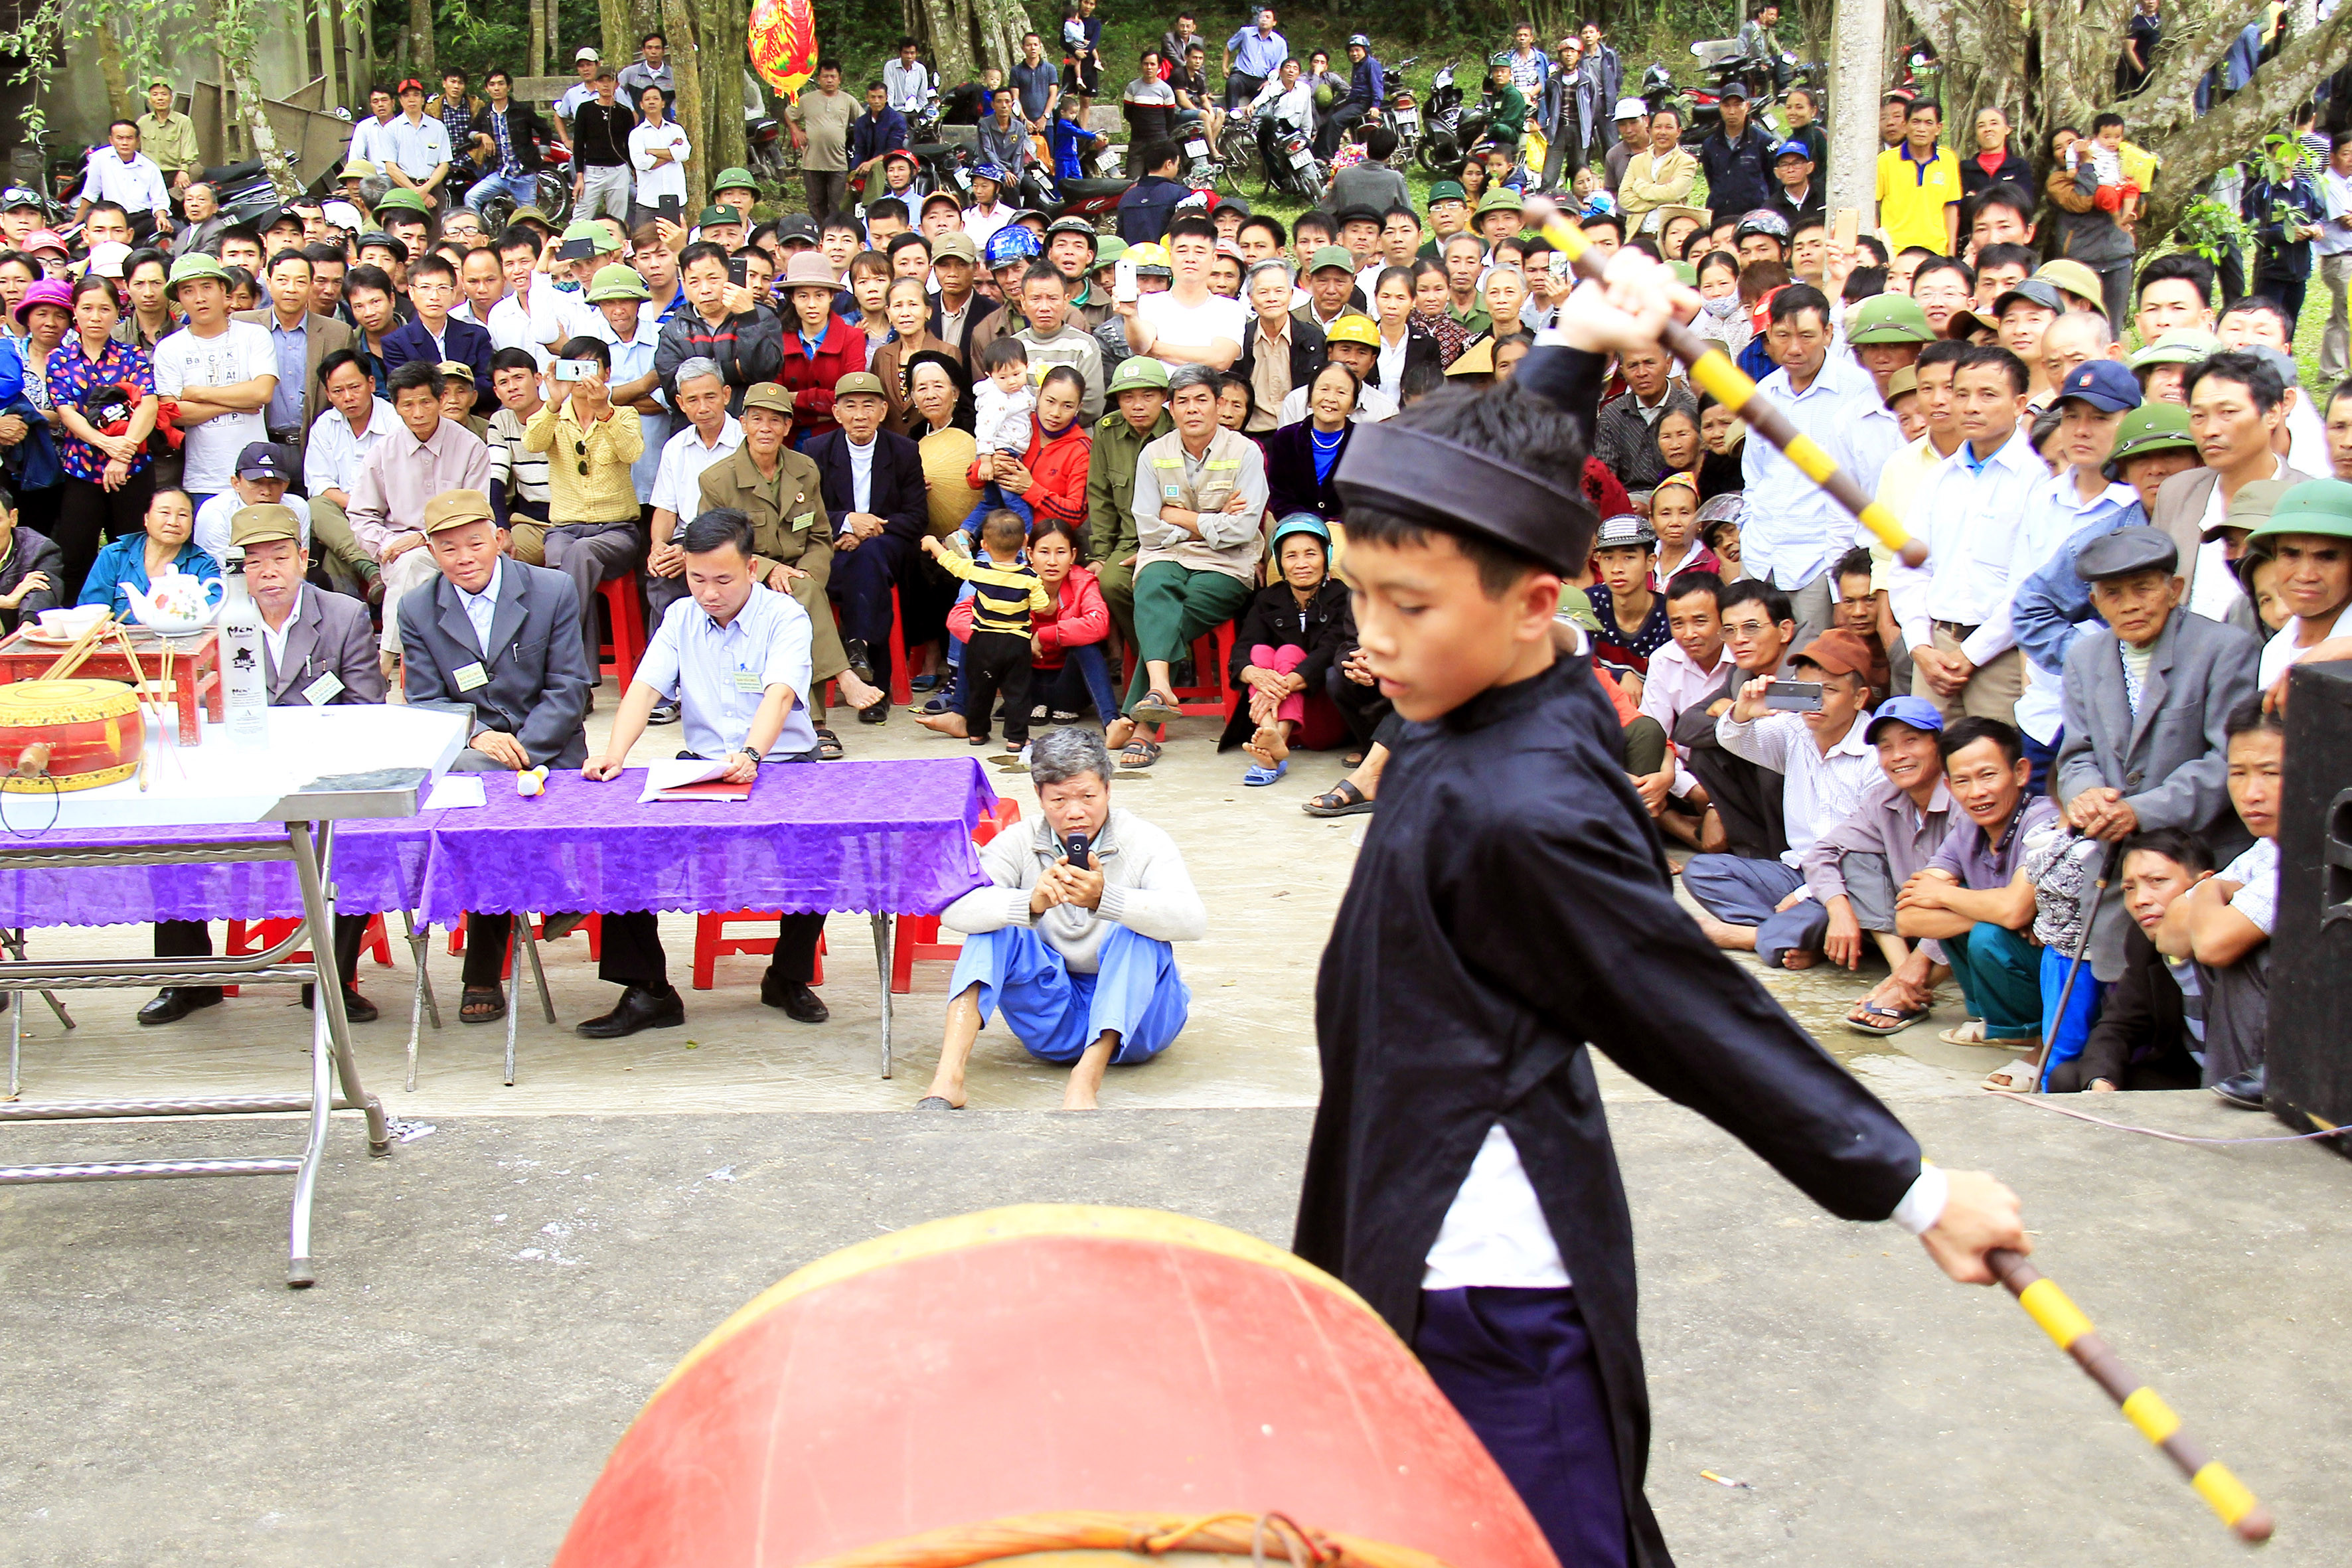 Màn trống của họ Thái Hữu xã Xuân Thành do cháu Thái Hữu Tuấn 13 tuổi trong vai trống cái đặc biệt hấp dẫn bởi tài nghệ đánh trống được bà con địa phương ca ngợi là “thần đồng trống” đã thu hút hàng ngàn người xem và cổ vũ.